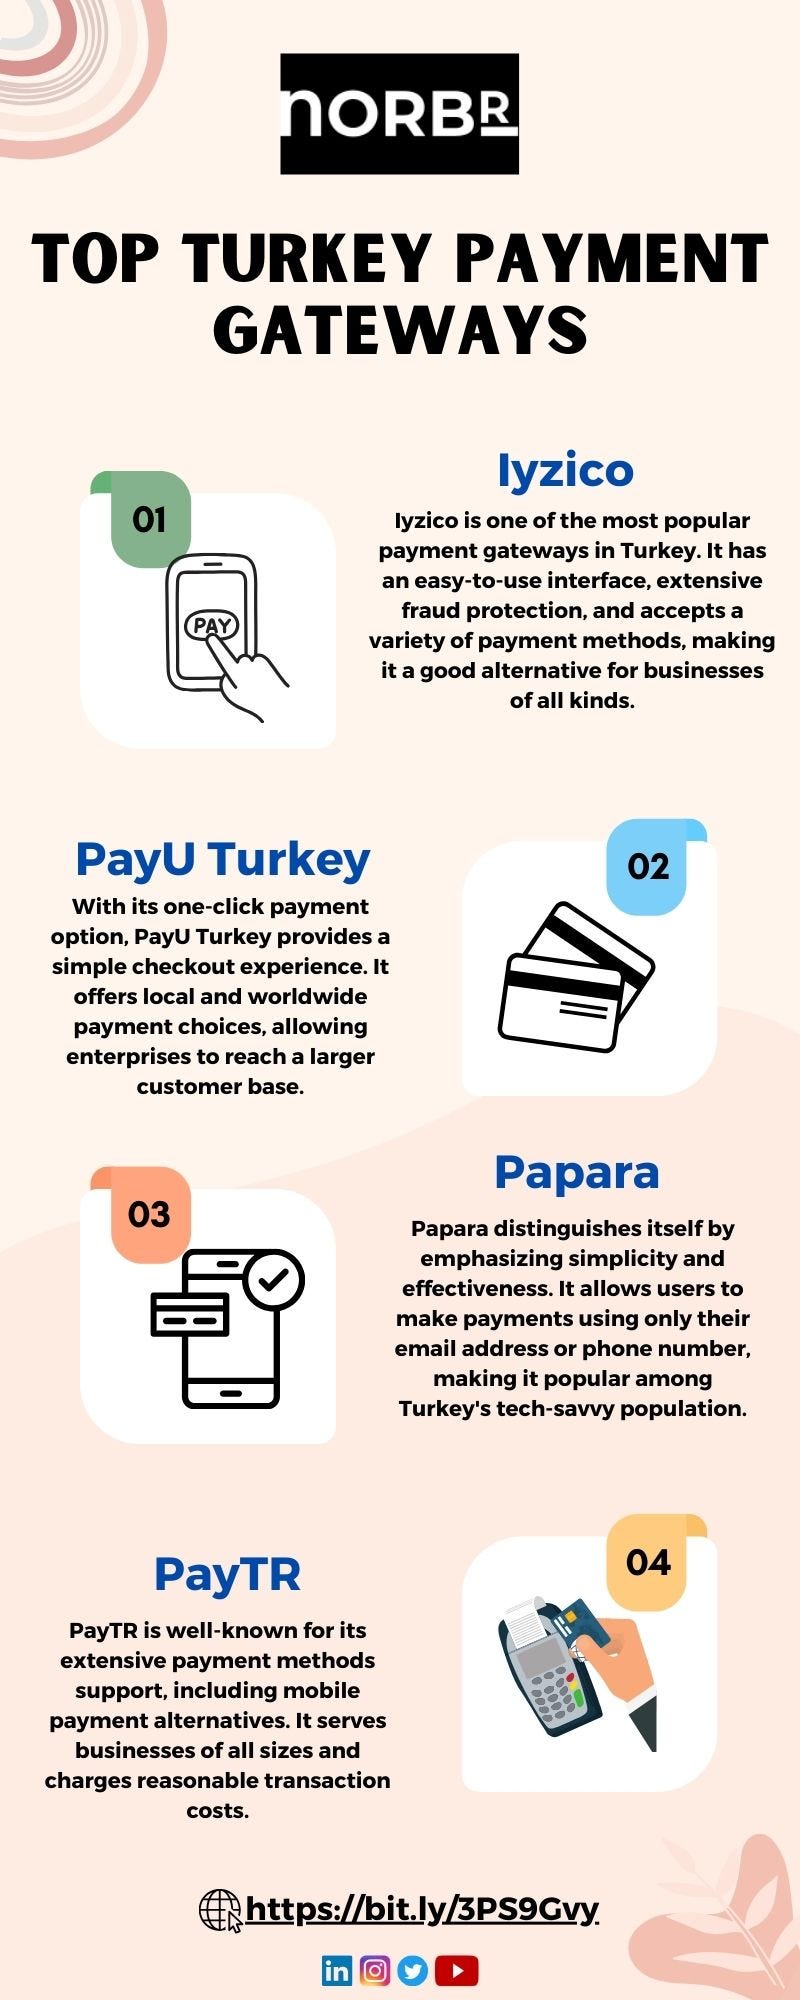 Top Turkey Payment Gateways - NORBr - Medium